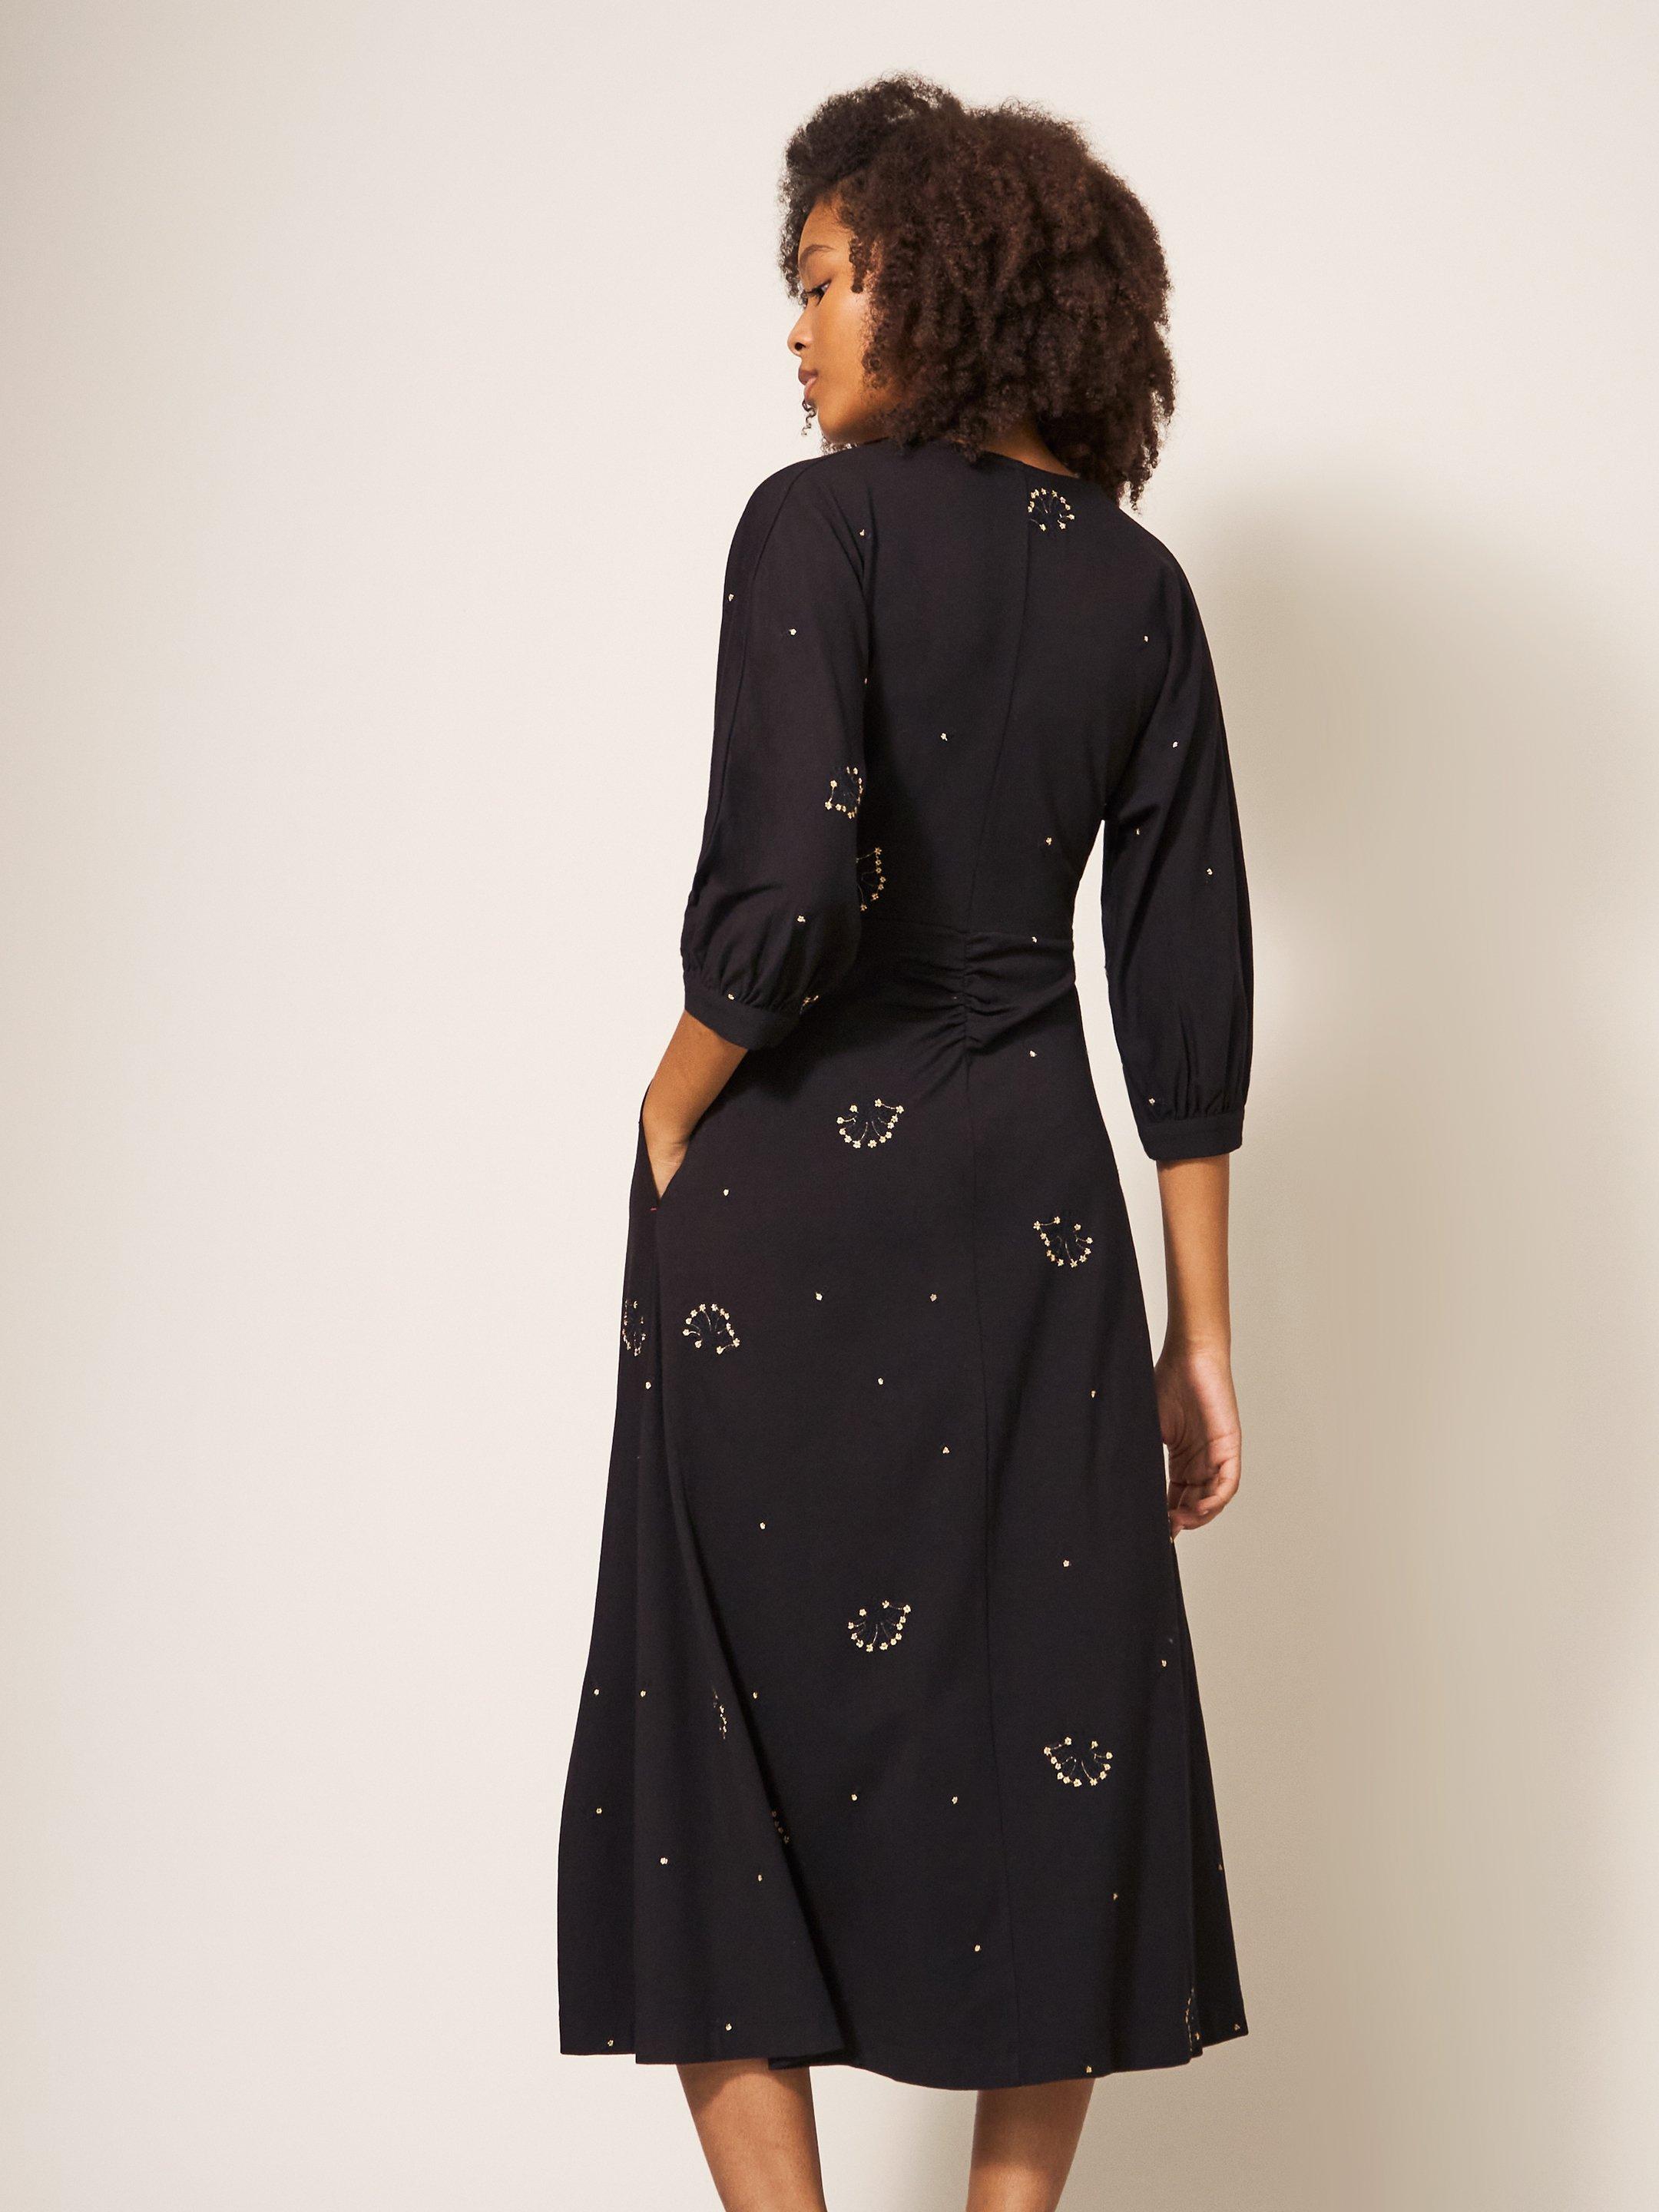 Megan Embroidered Jersey Dress in BLK MLT - MODEL BACK